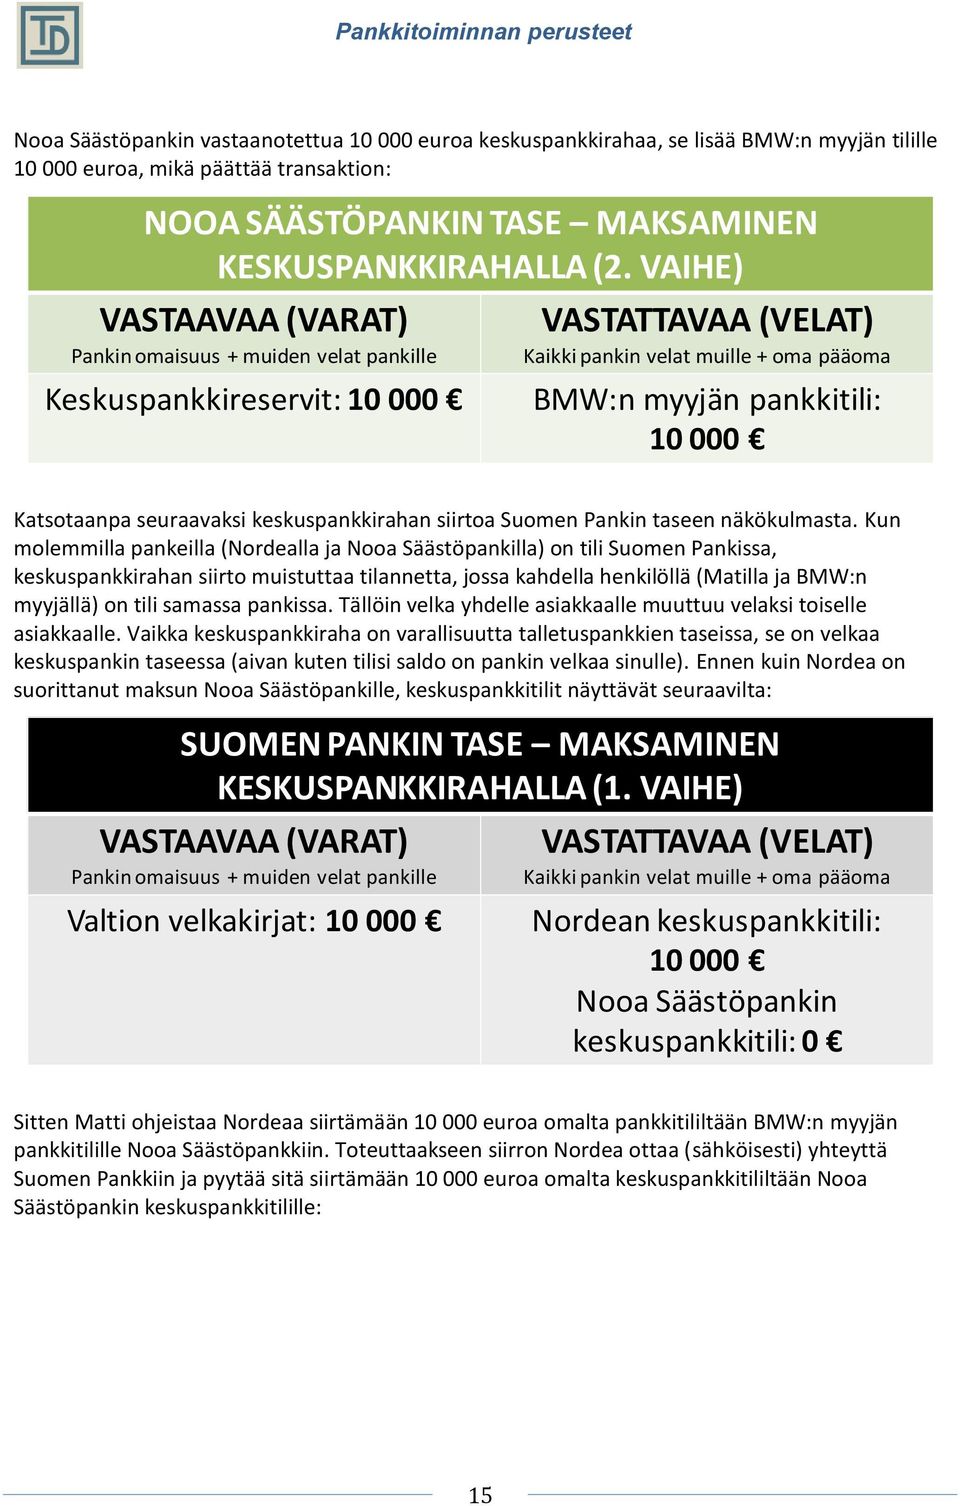 Kun molemmilla pankeilla (Nordealla ja Nooa Säästöpankilla) on tili Suomen Pankissa, keskuspankkirahan siirto muistuttaa tilannetta, jossa kahdella henkilöllä (Matilla ja BMW:n myyjällä) on tili